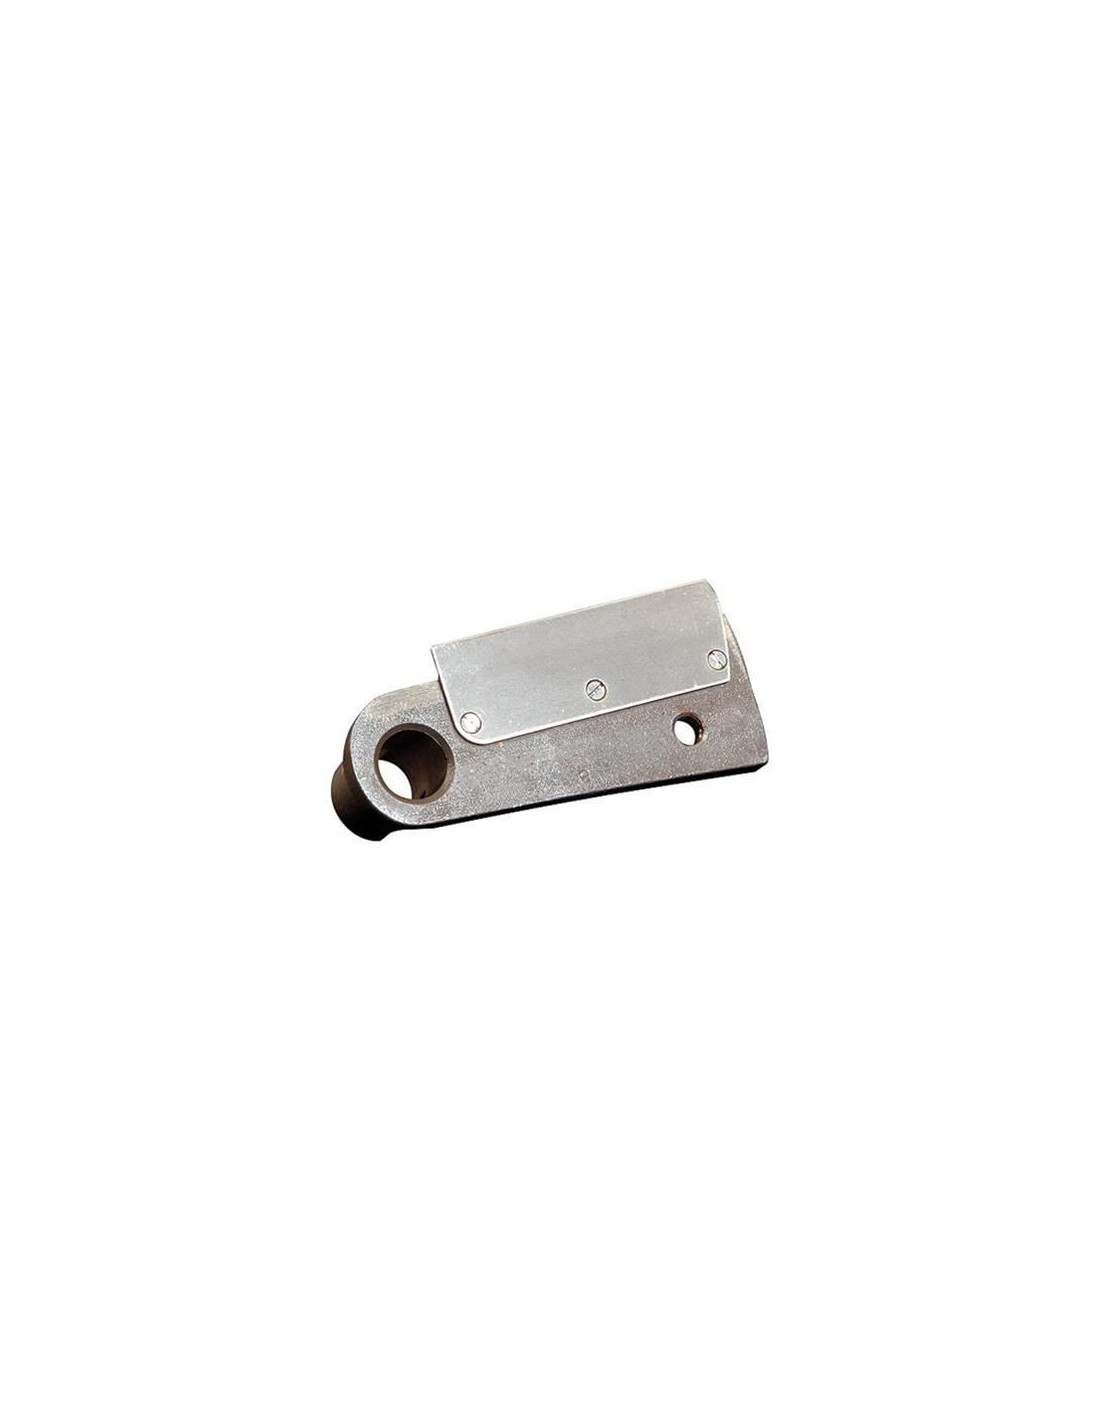 Cuchilla cortadora de disco - para cortar en dados - Cuchilla Modelo Acero inoxidable P5 - Espesor de corte mm 5